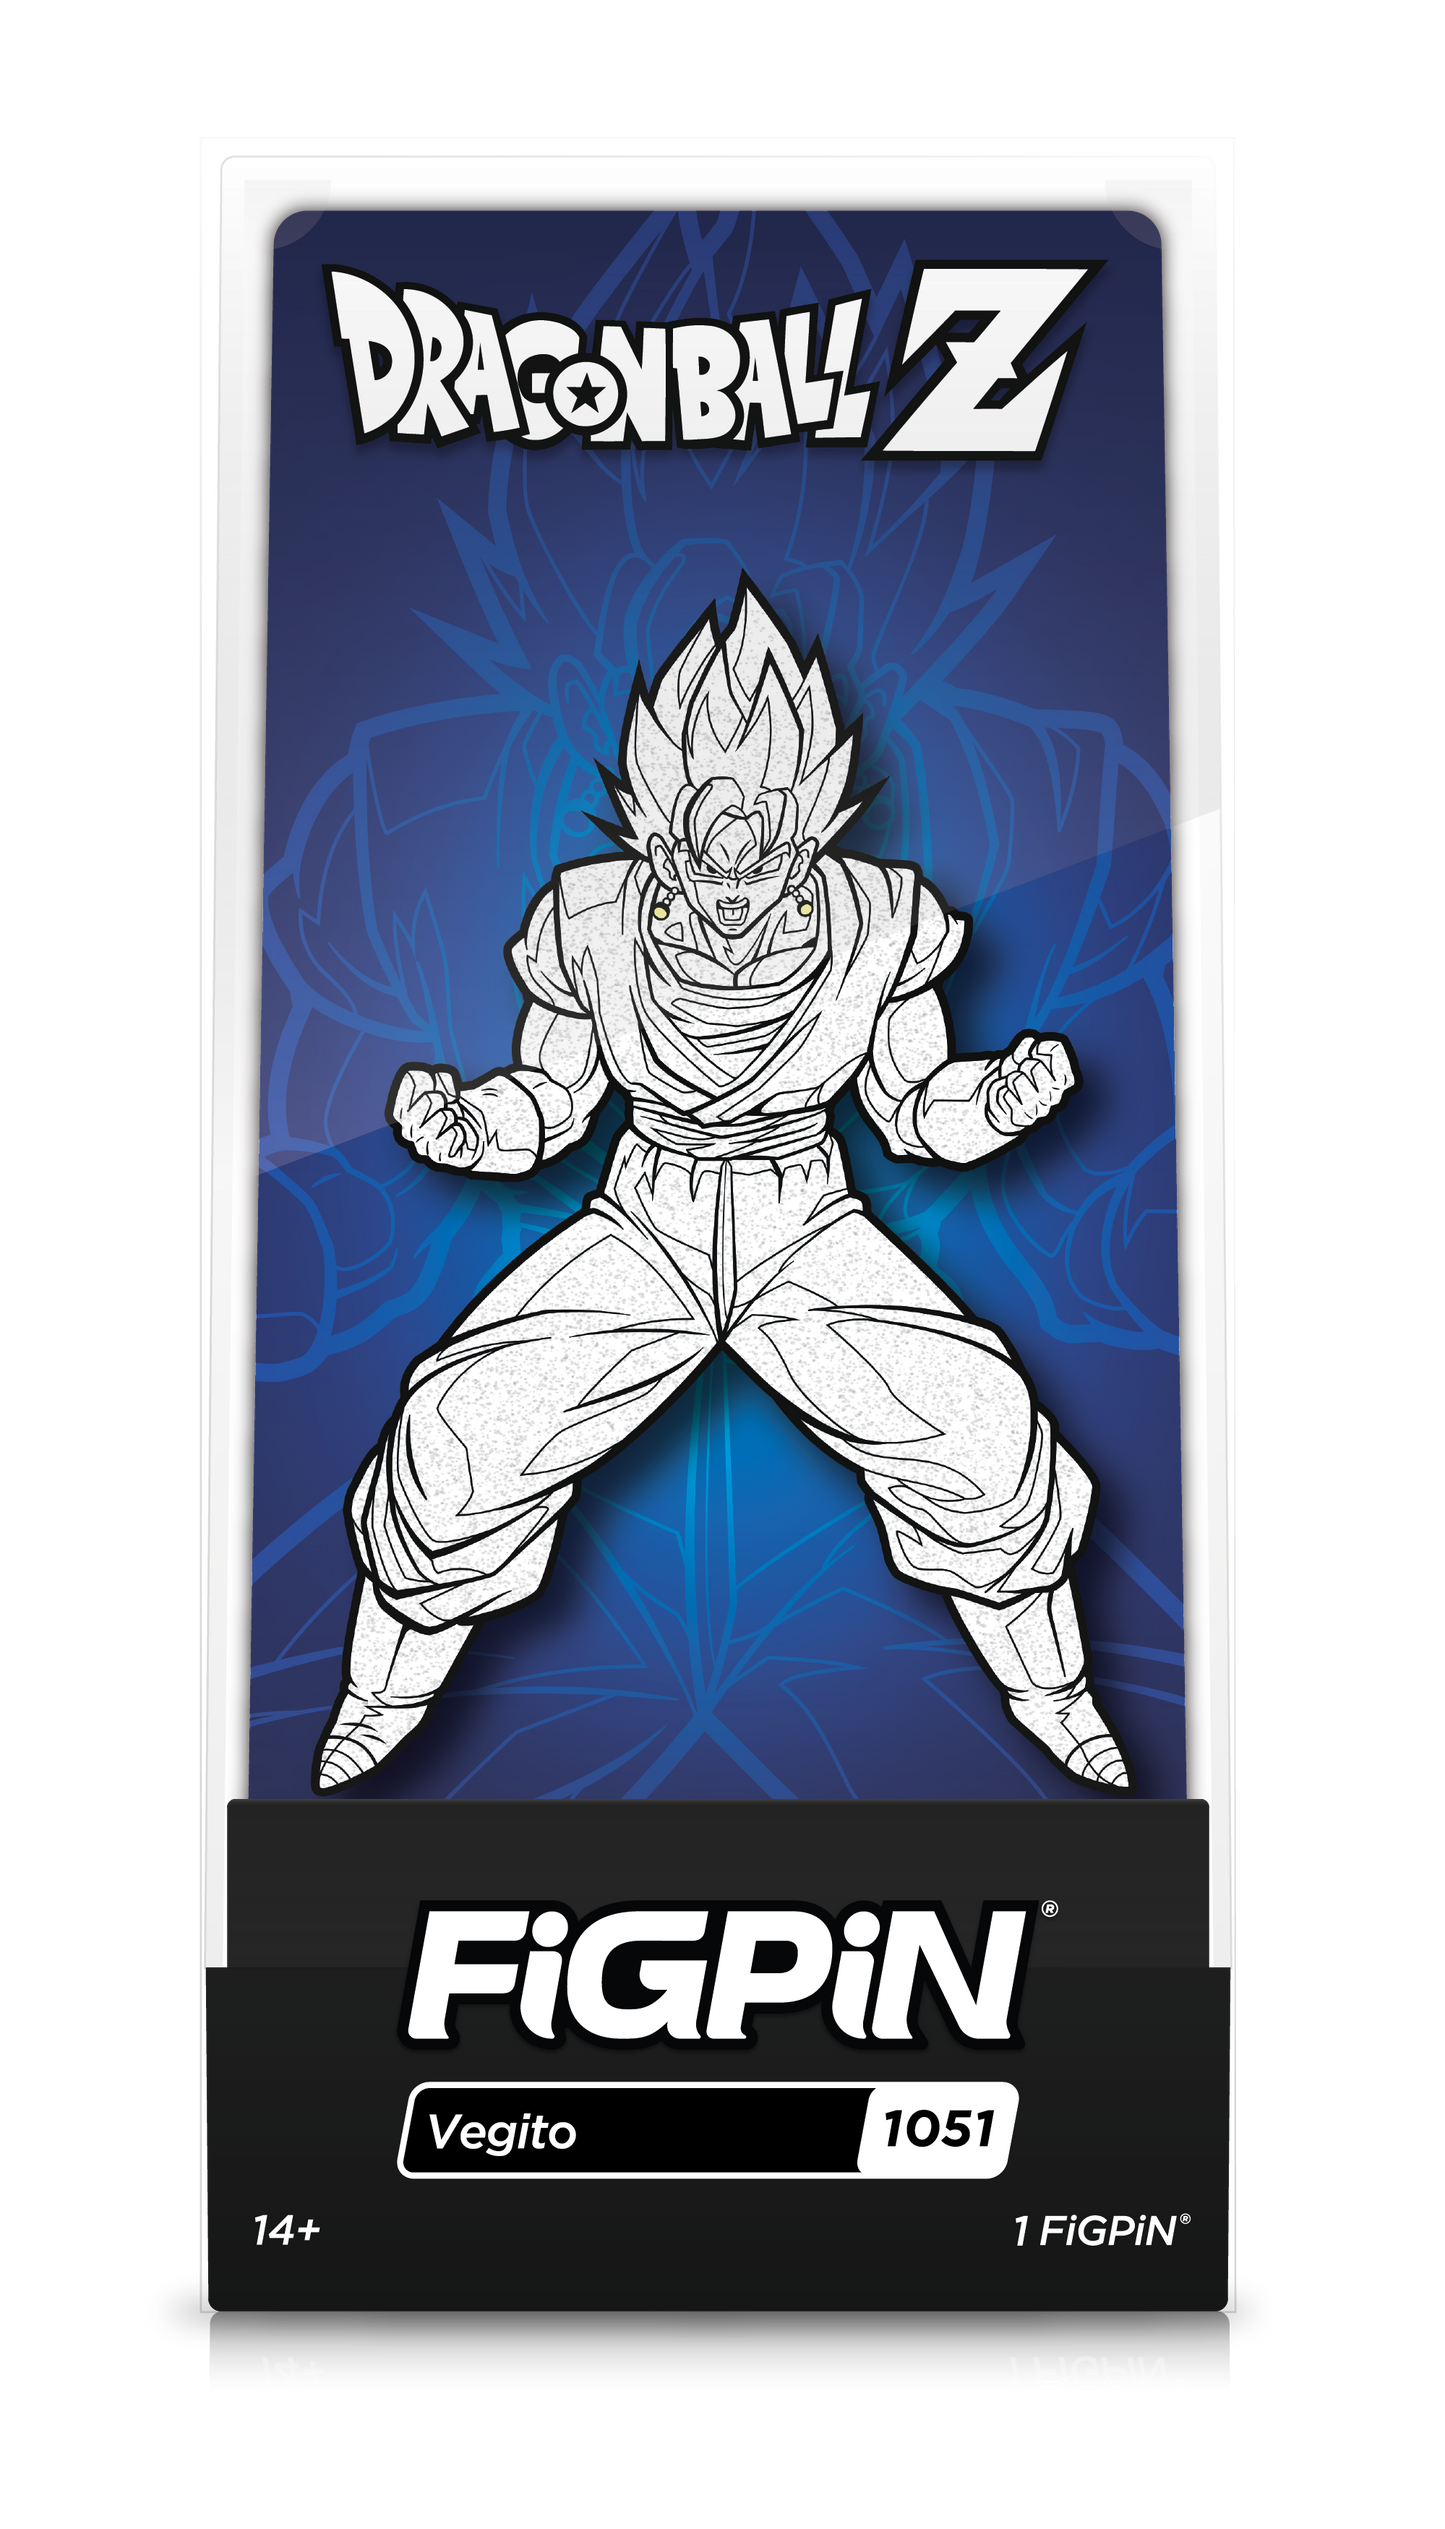 FiGPiN Dragon Ball Z Vegito #1051 [Black & White, Glitter] eVend Exclusive